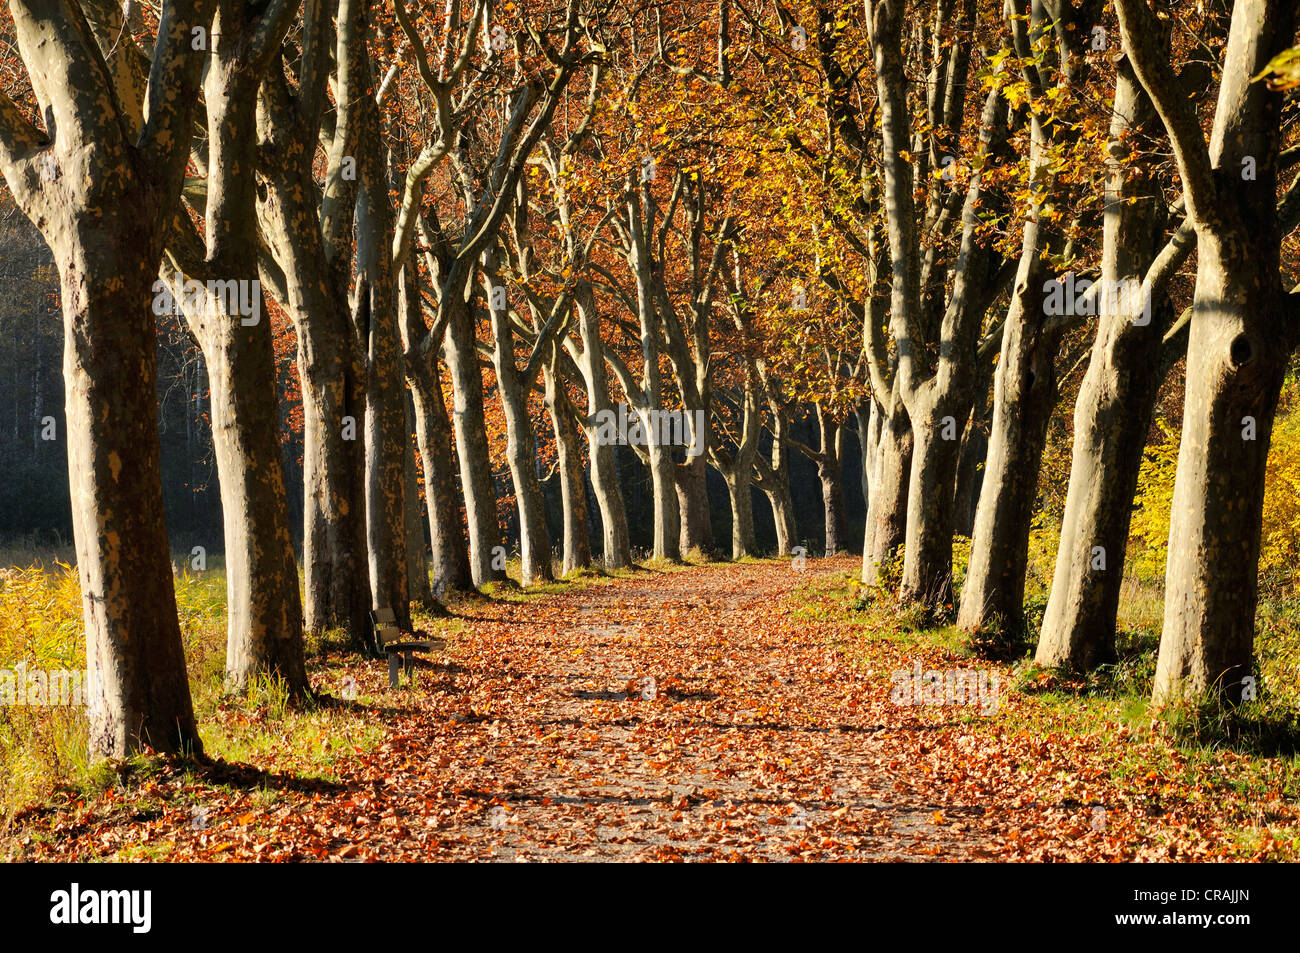 Route bordée d'arbres, platanes (Platanus) en automne, district de Konstanz, ou Constance, Bade-Wurtemberg, Allemagne, Europe Banque D'Images